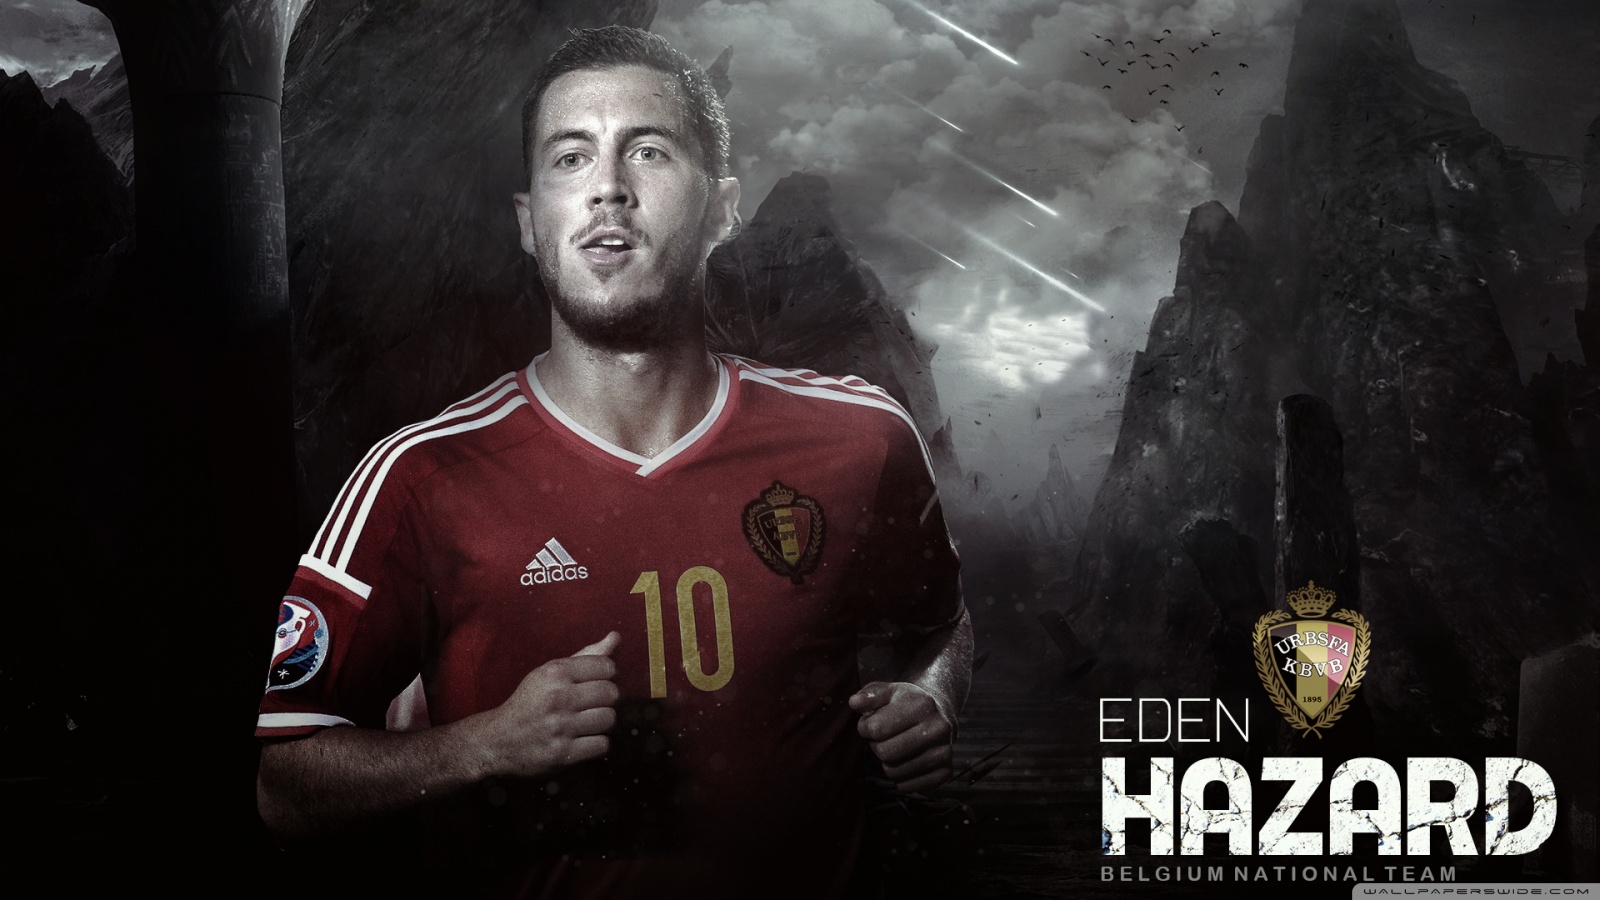 Eden Hazard Belgium Wallpaper Hd - HD Wallpaper 